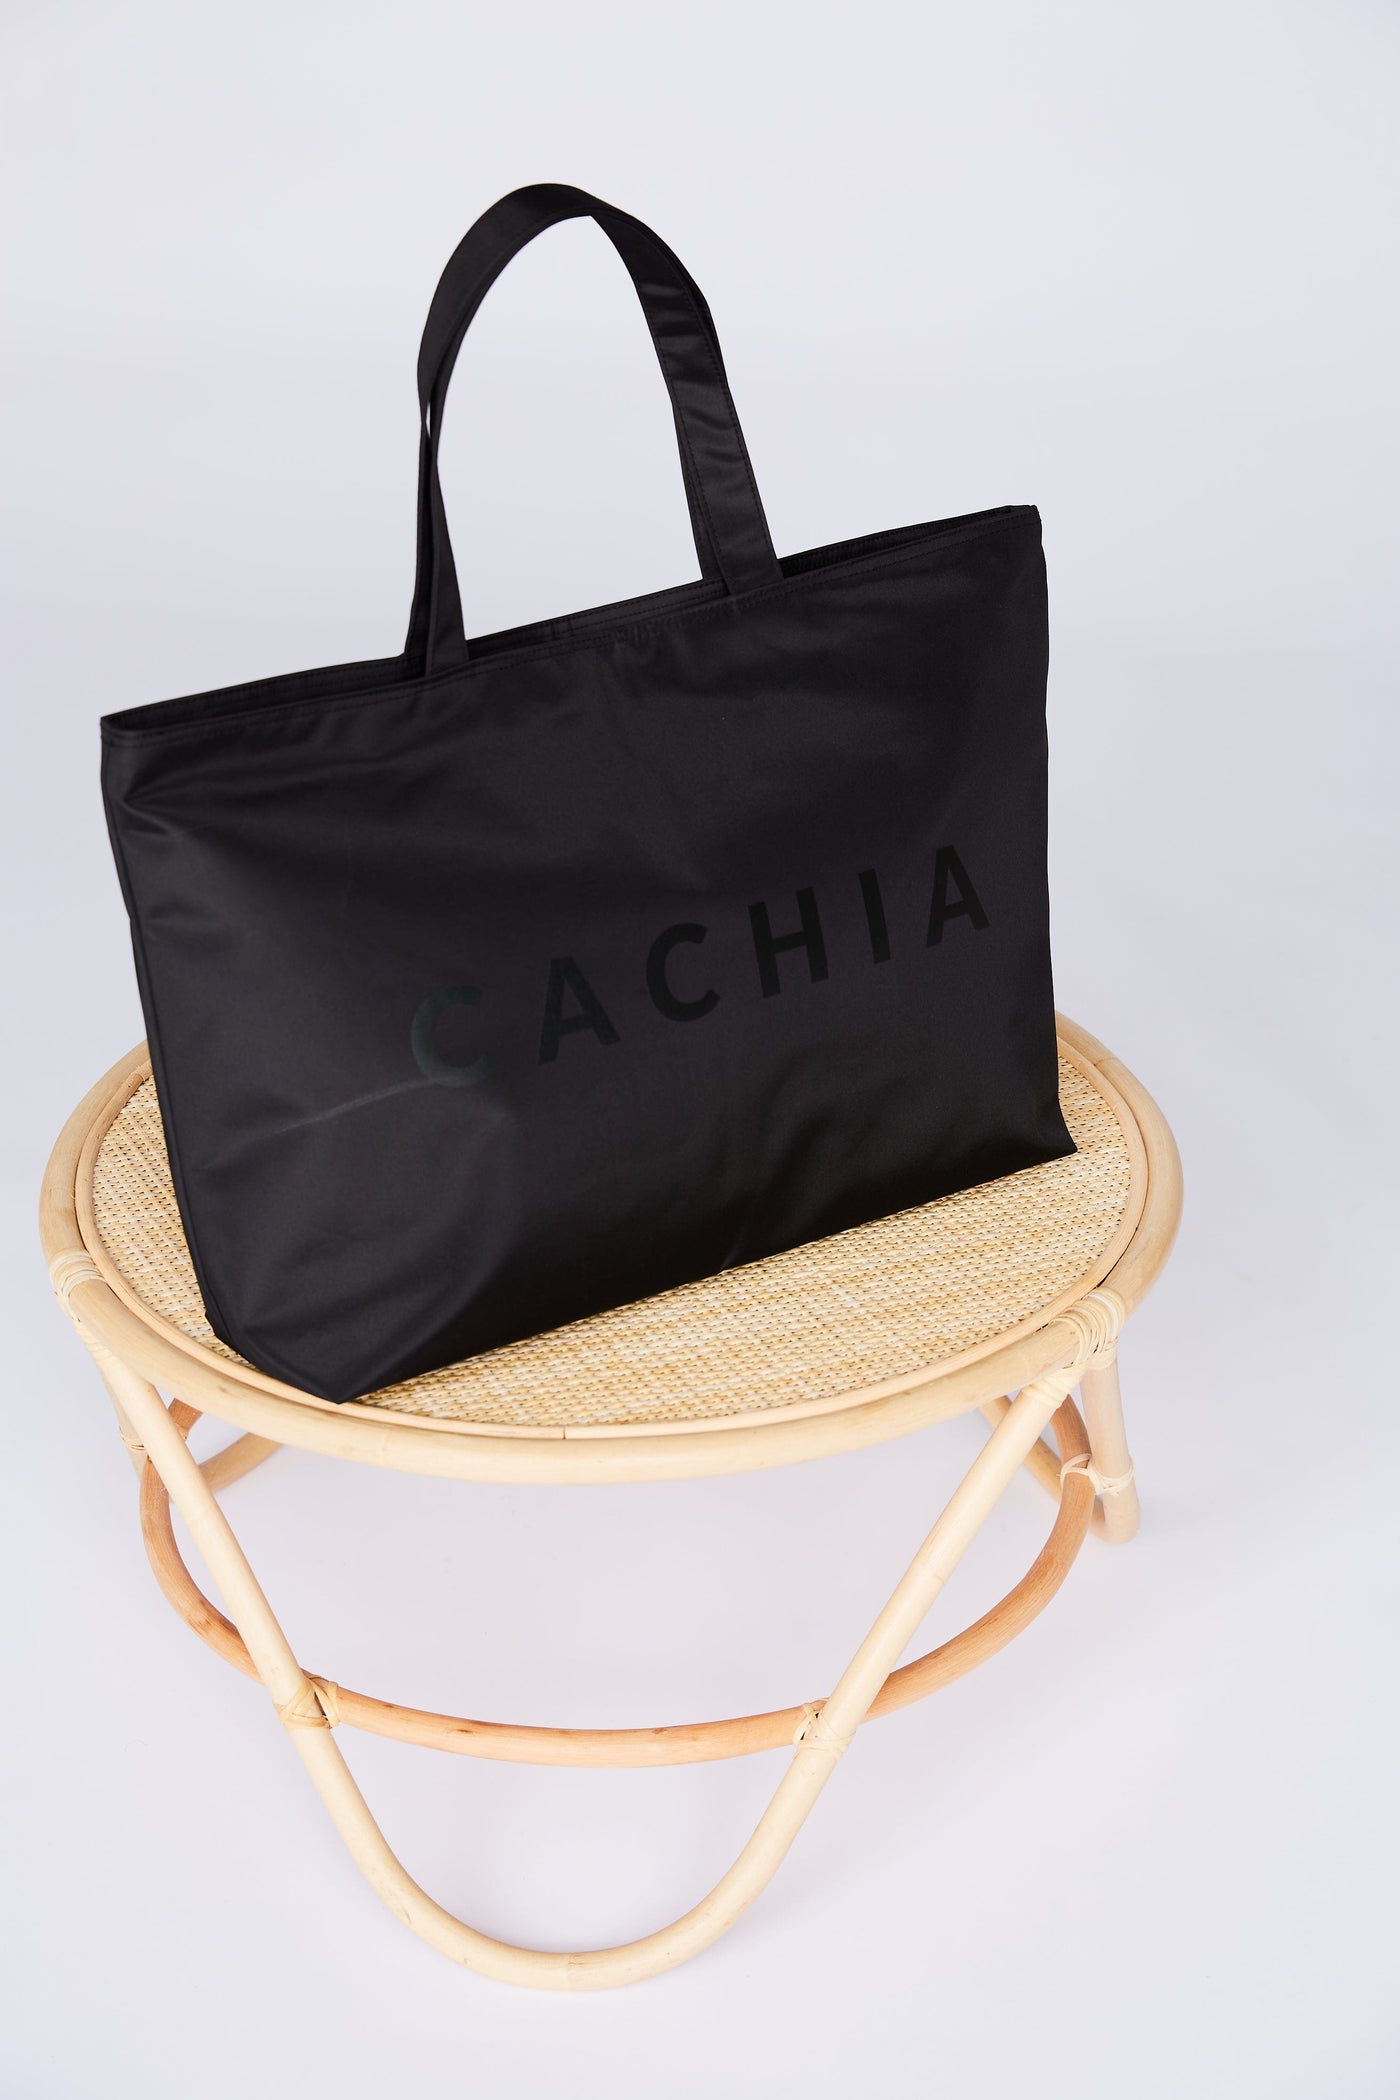 Cachia Essential Bag Handbags